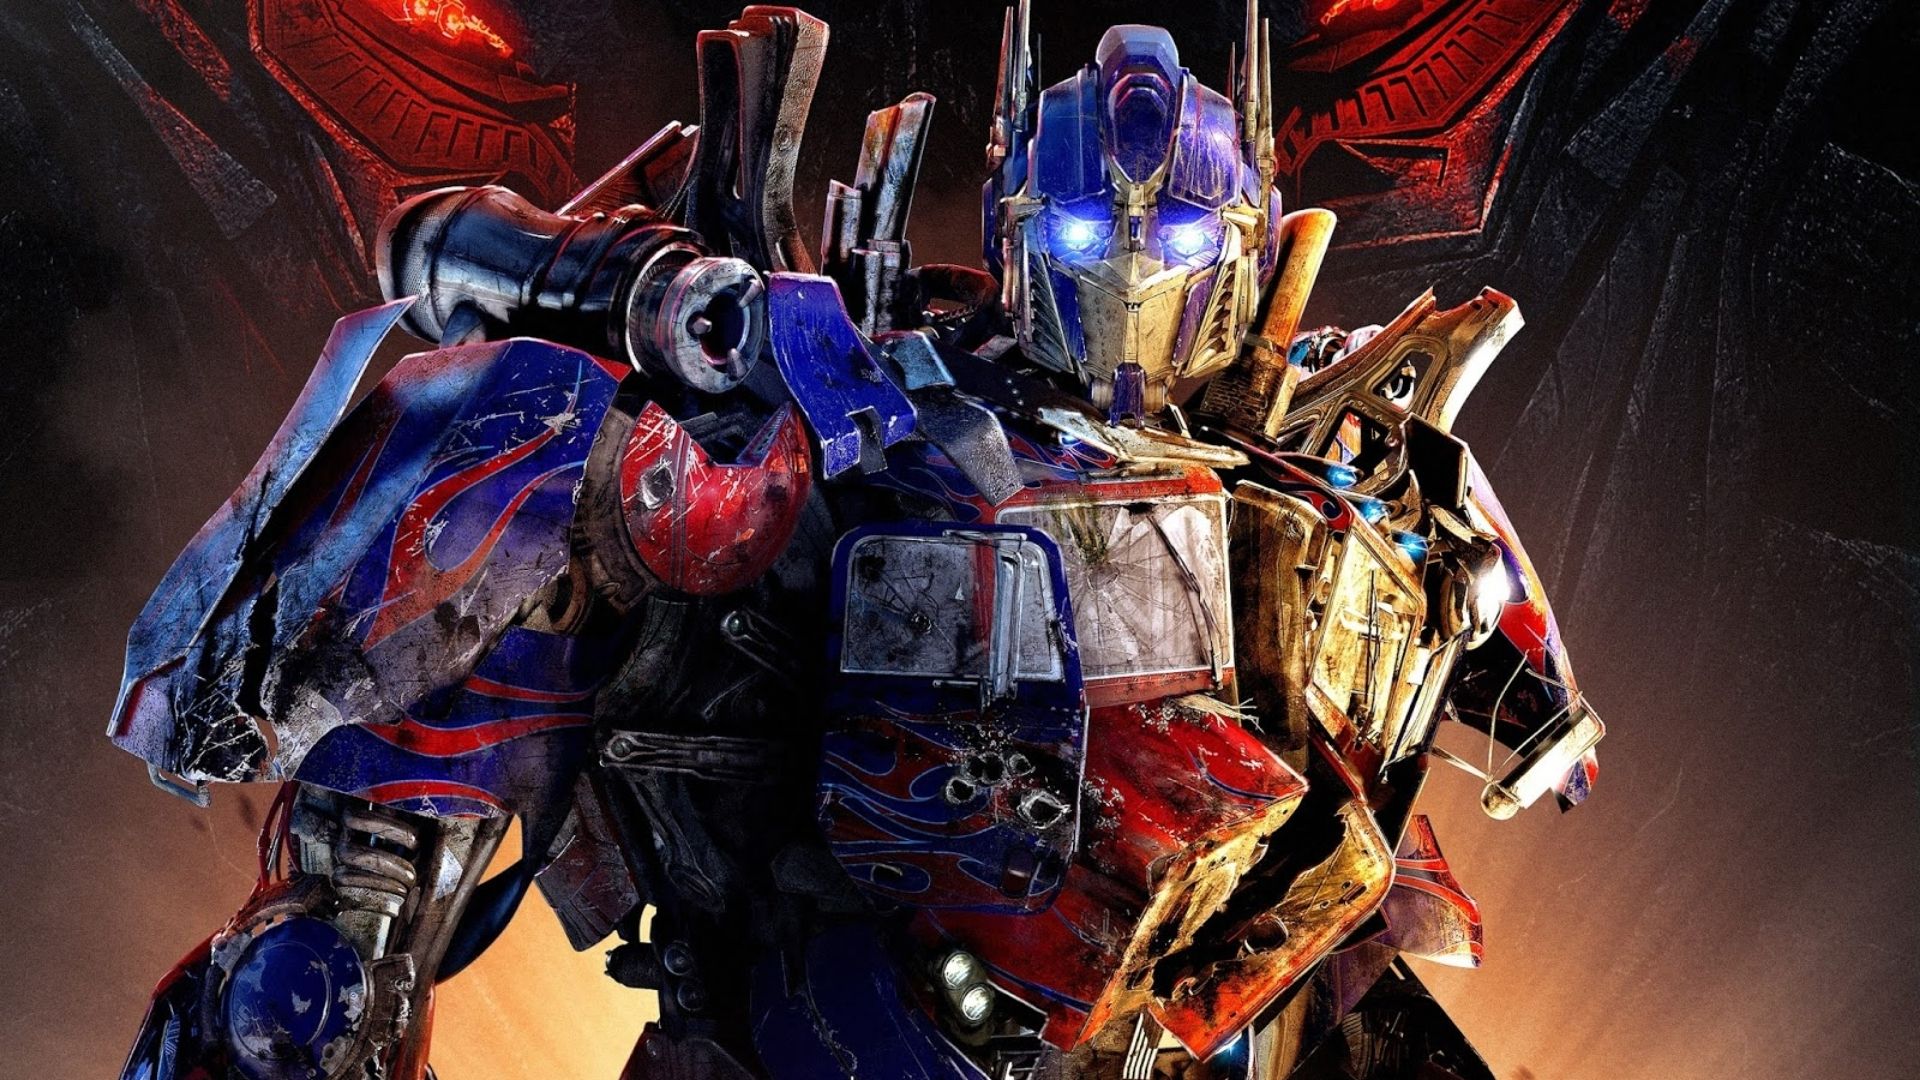 Transformers: nova trilogia de filmes é anunciada pela Paramount